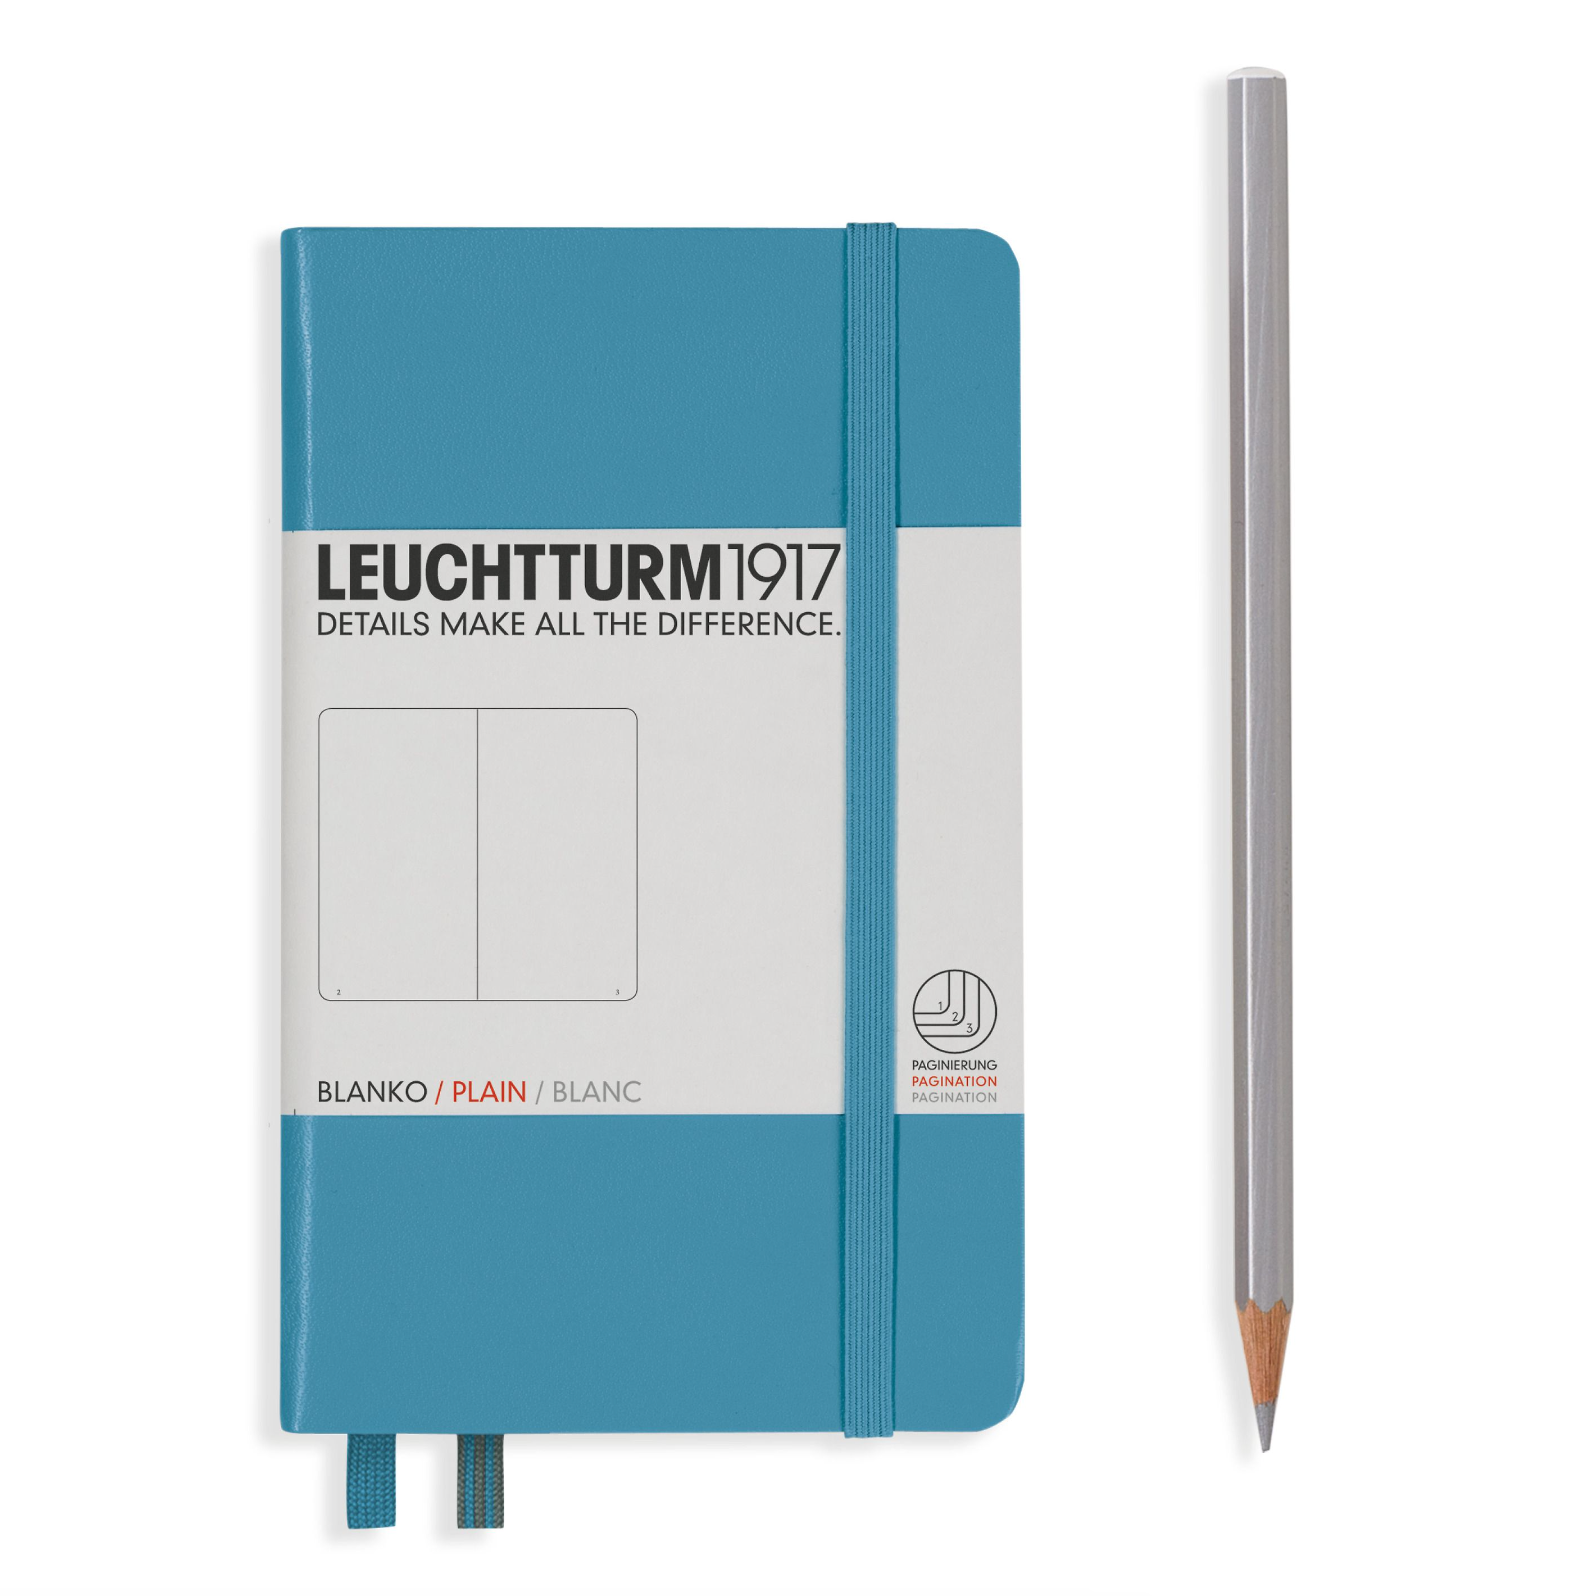 Leuchtturm A6 Softcover pocket notebook